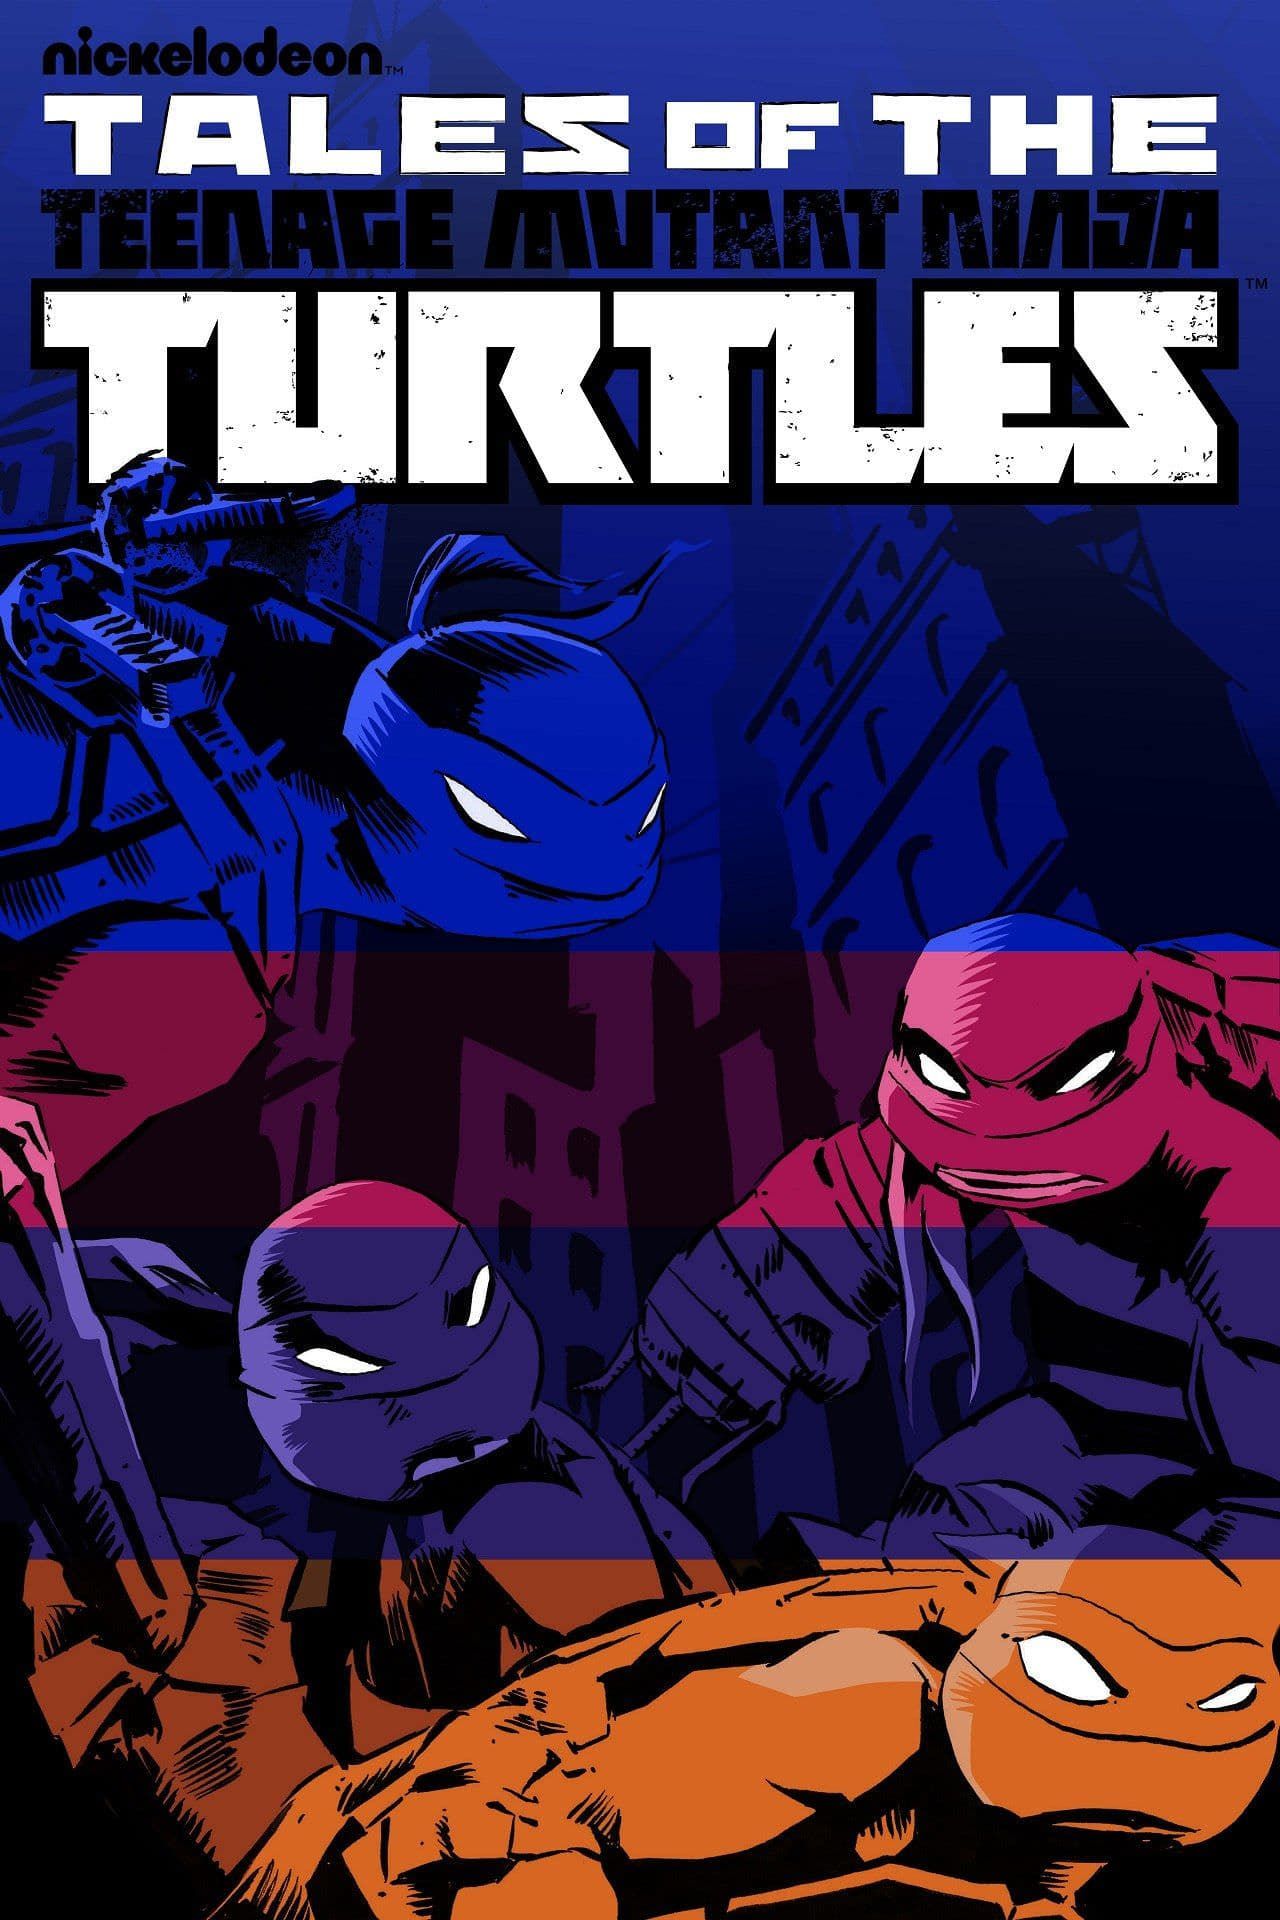 Watch Teenage Mutant Ninja Turtles Streaming Online